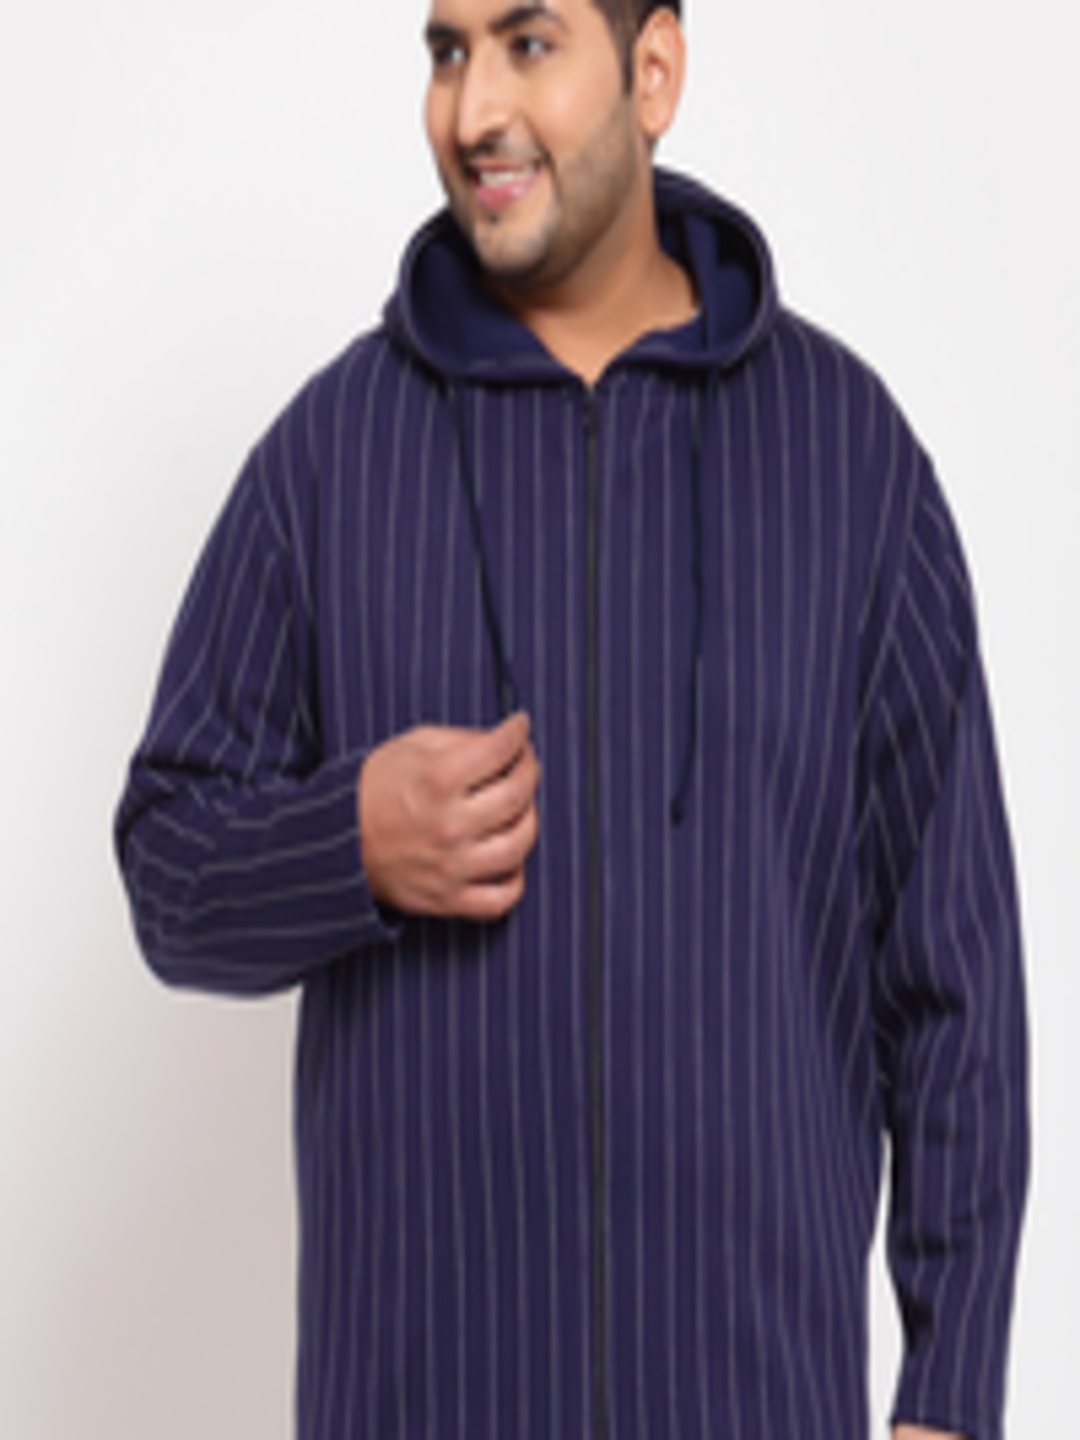 Buy PlusS Men Navy Blue Striped Hooded Sweatshirt - Sweatshirts for Men ...